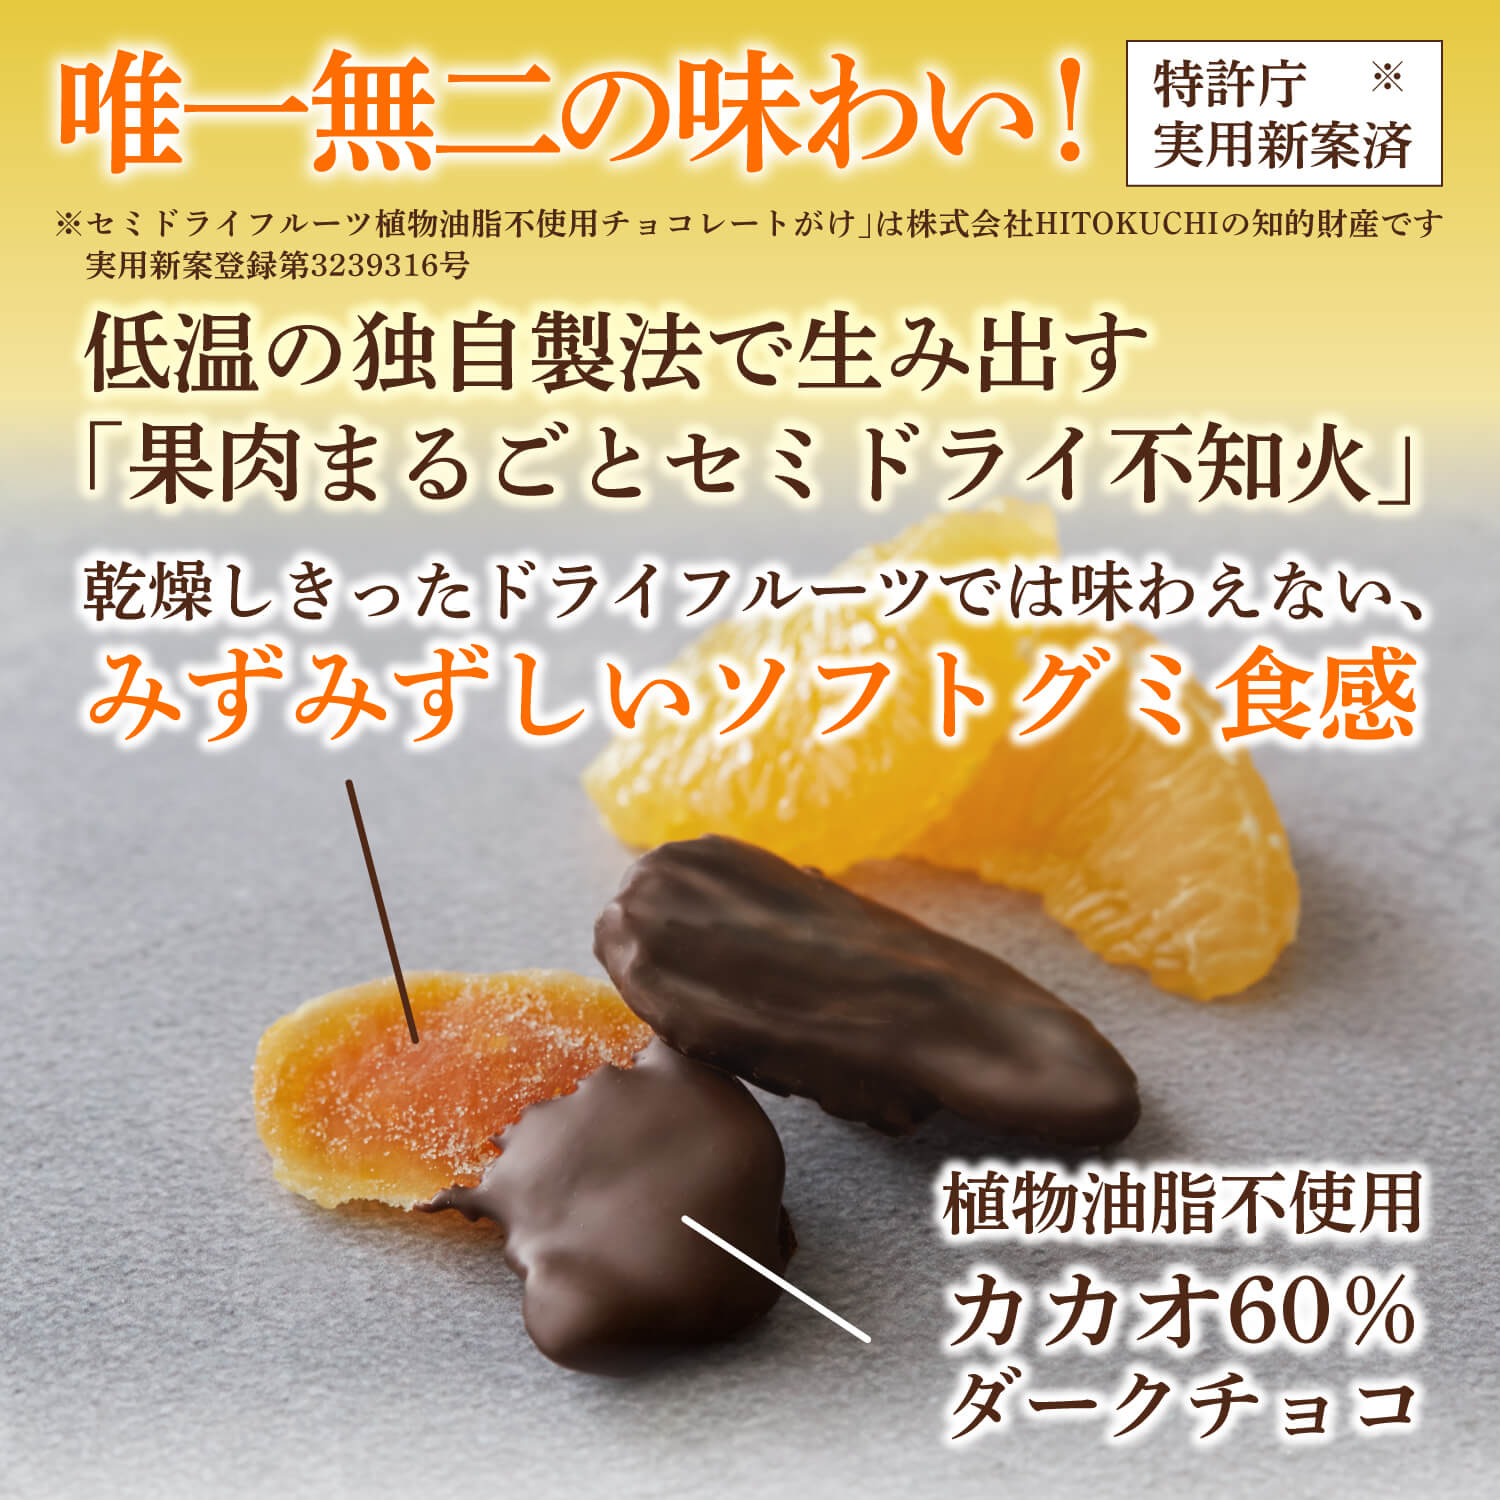 【ギフトセット 送料無料】ひとくち不知火・幻の柑橘